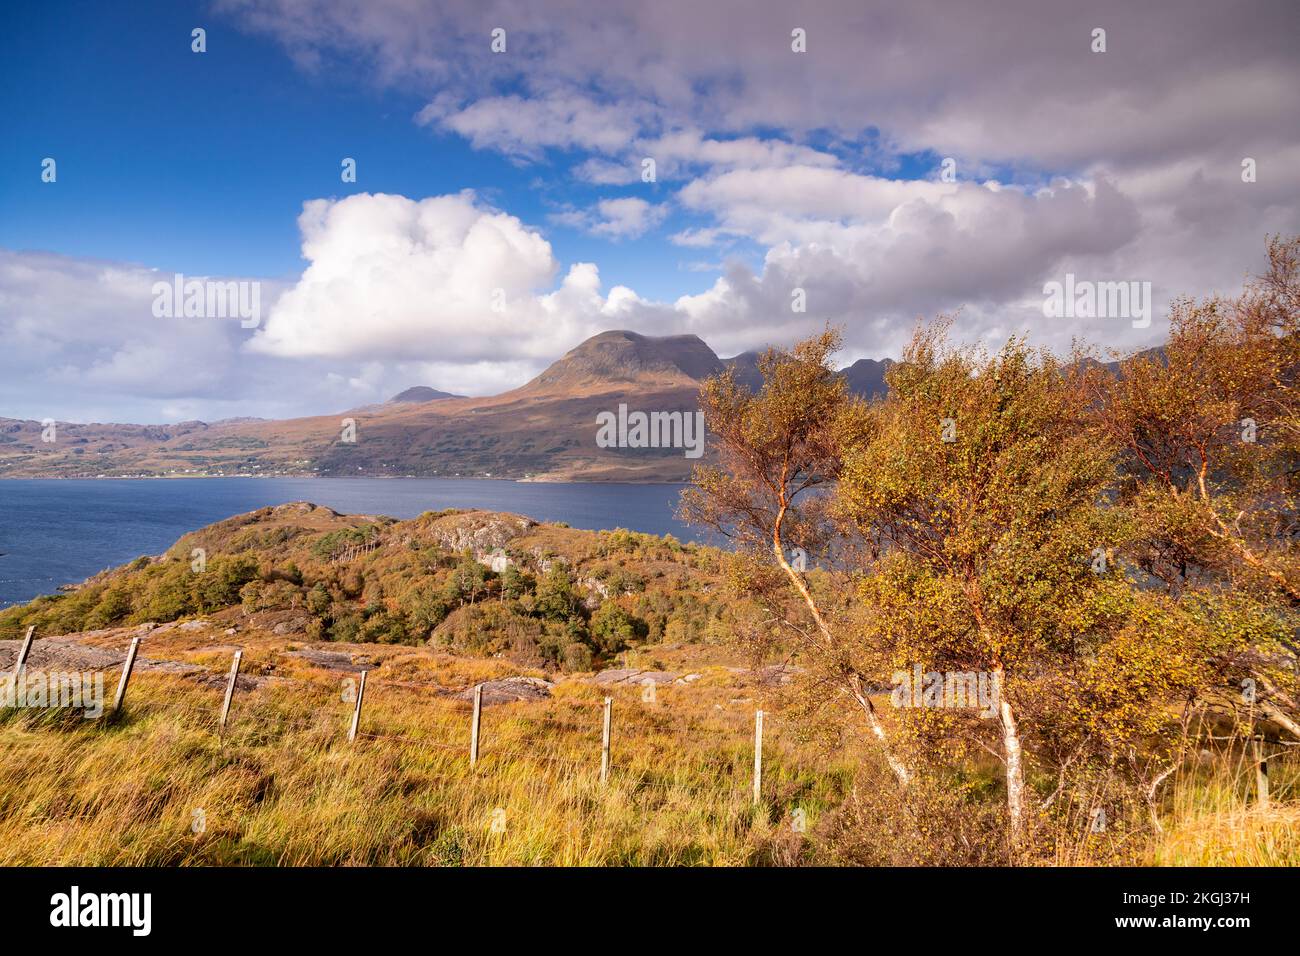 Little Loch Torridon in the highlands of northwest Scotland Stock Photo